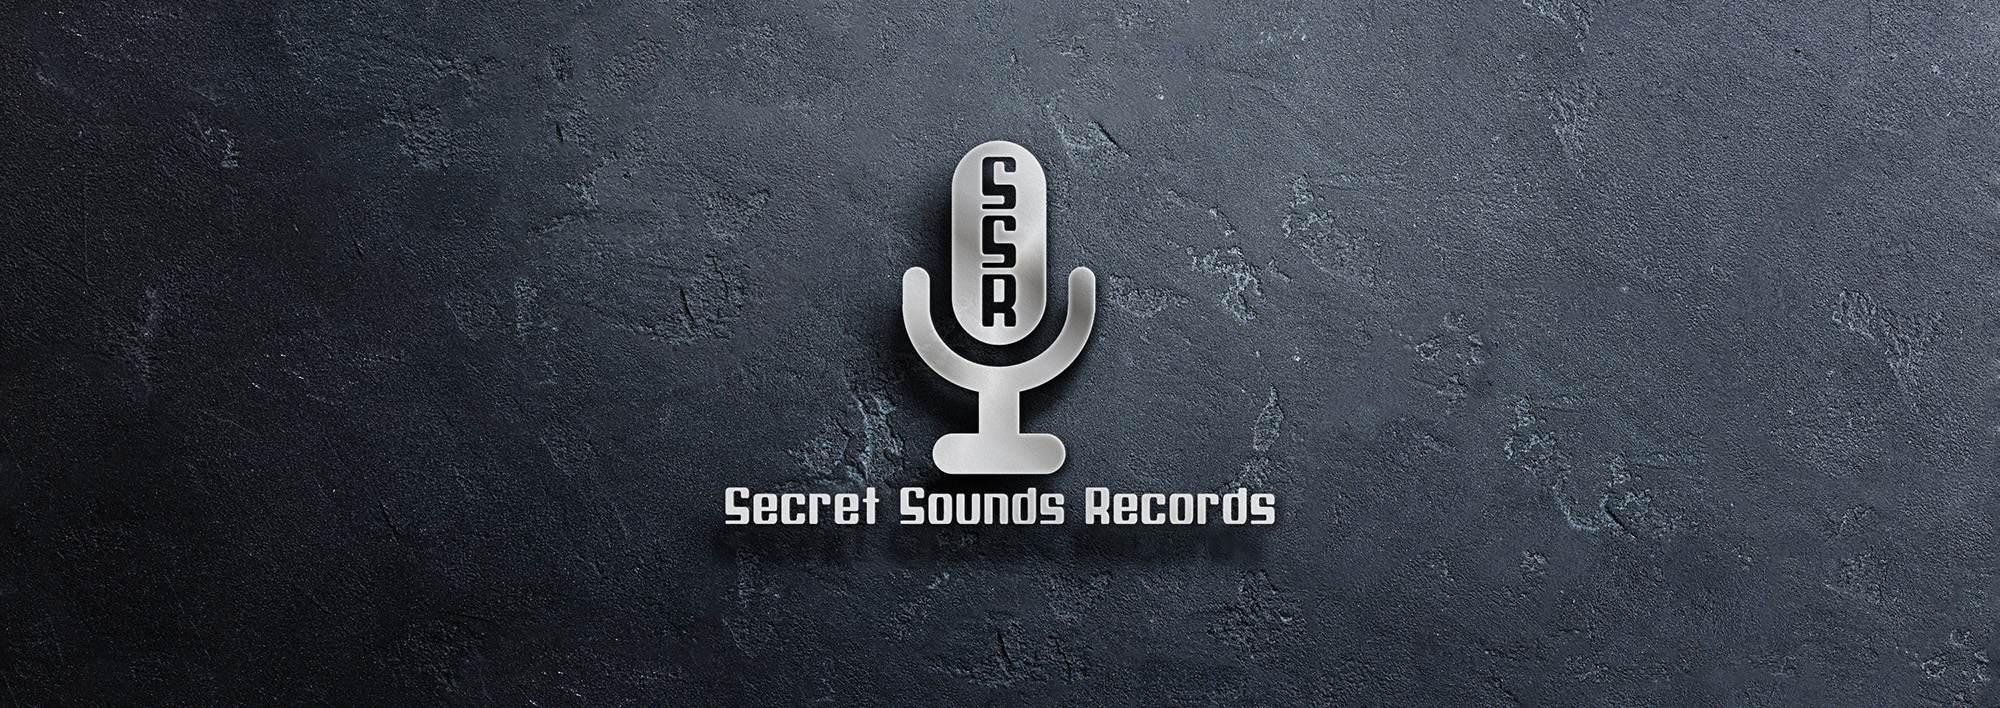 secret sounds records